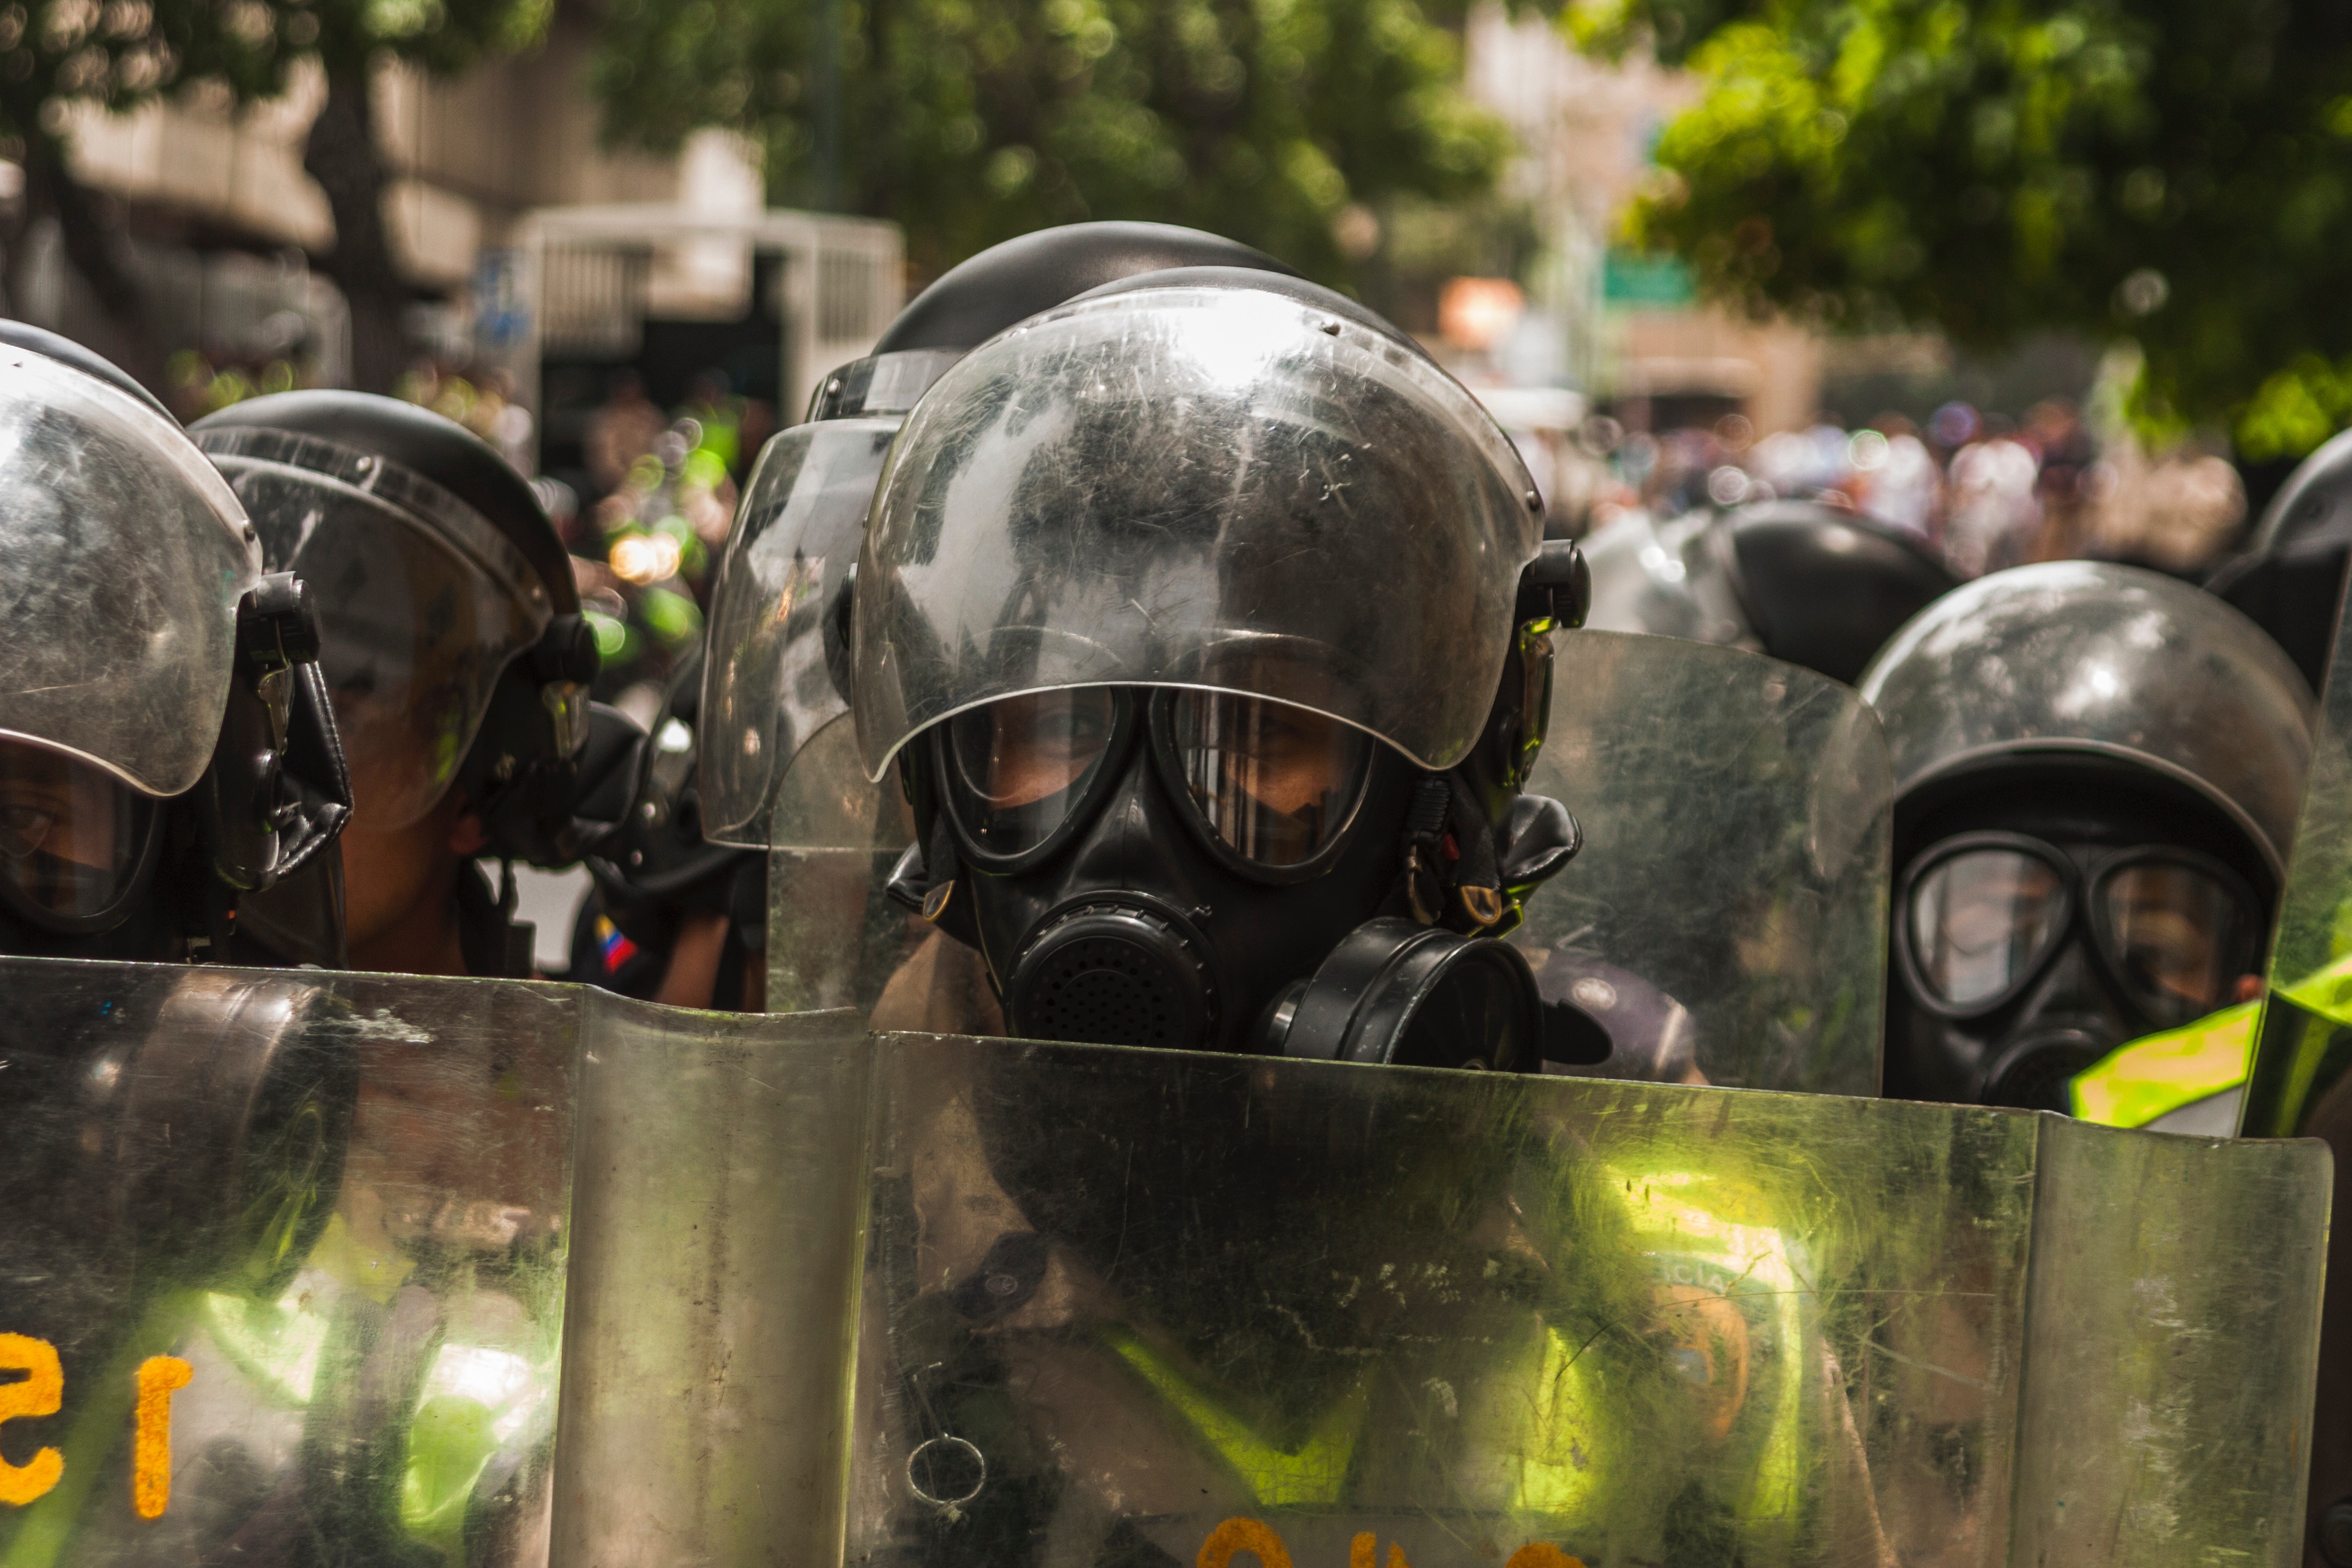 Six Takeaways from Venezuela’s Dystopia